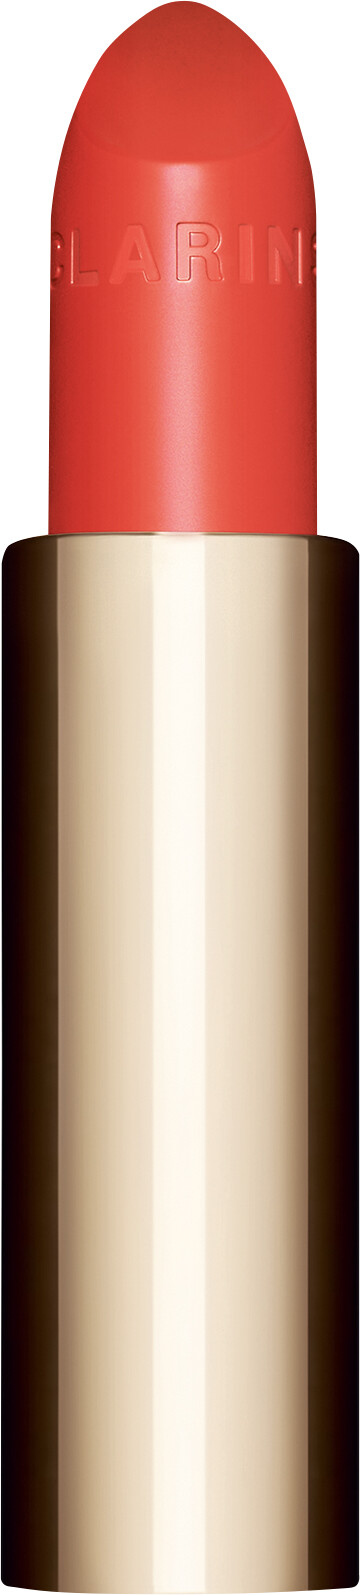 Clarins Joli Rouge Lipstick Refill 3.5g 711 - Papaya